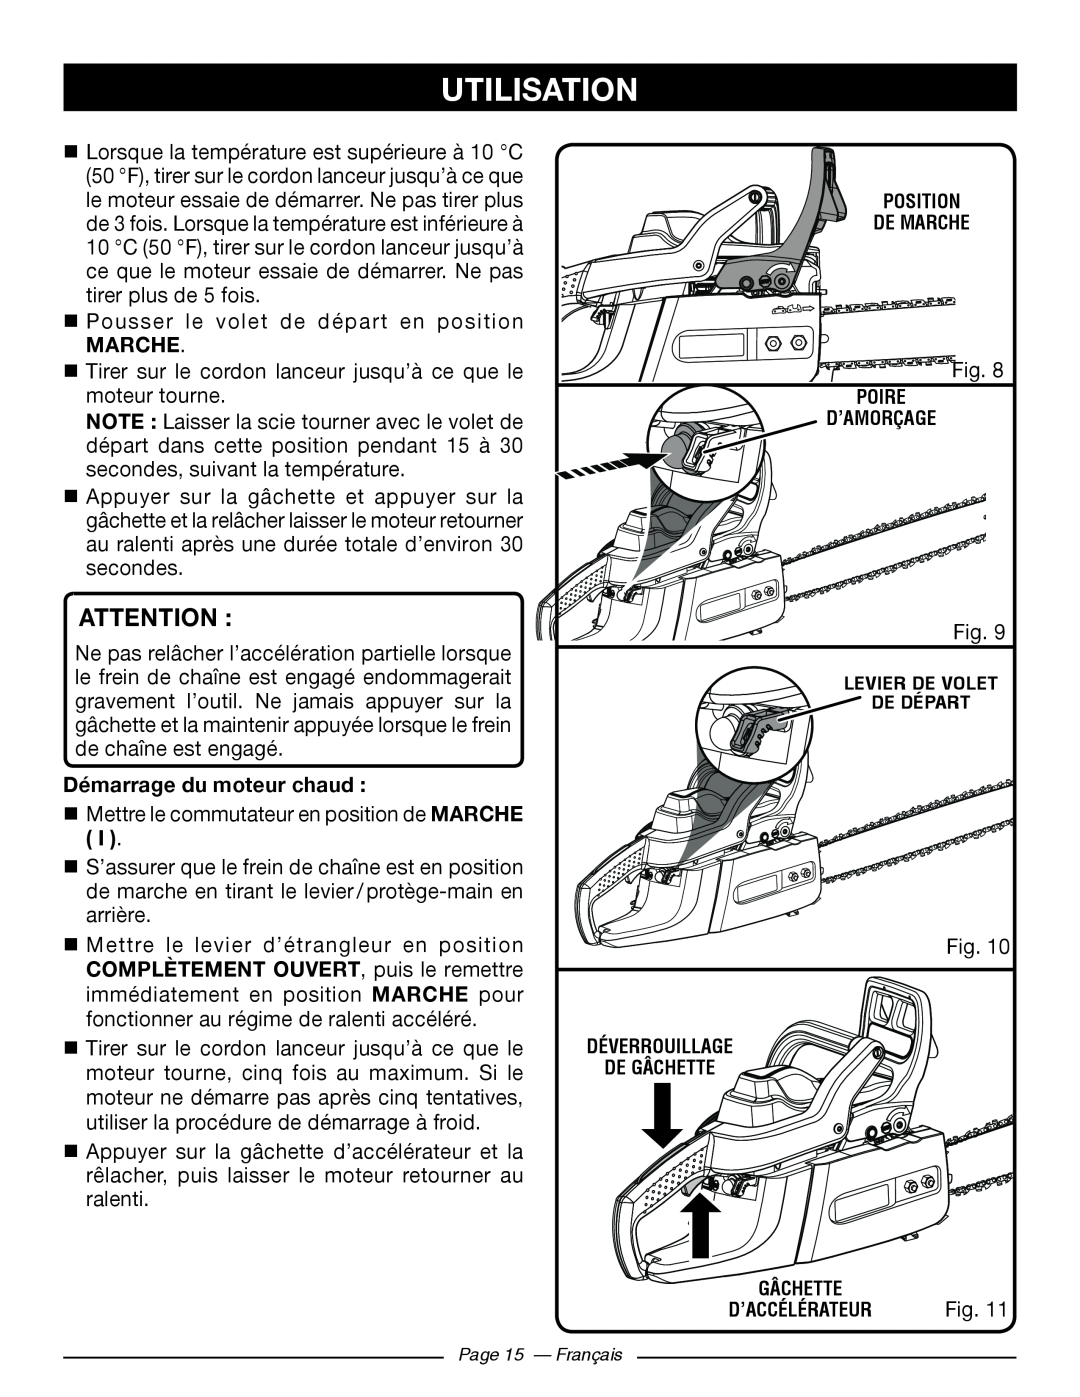 Ryobi RY10520, RY10518 manuel dutilisation Marche, Démarrage du moteur chaud , Utilisation, Page 15 - Français 